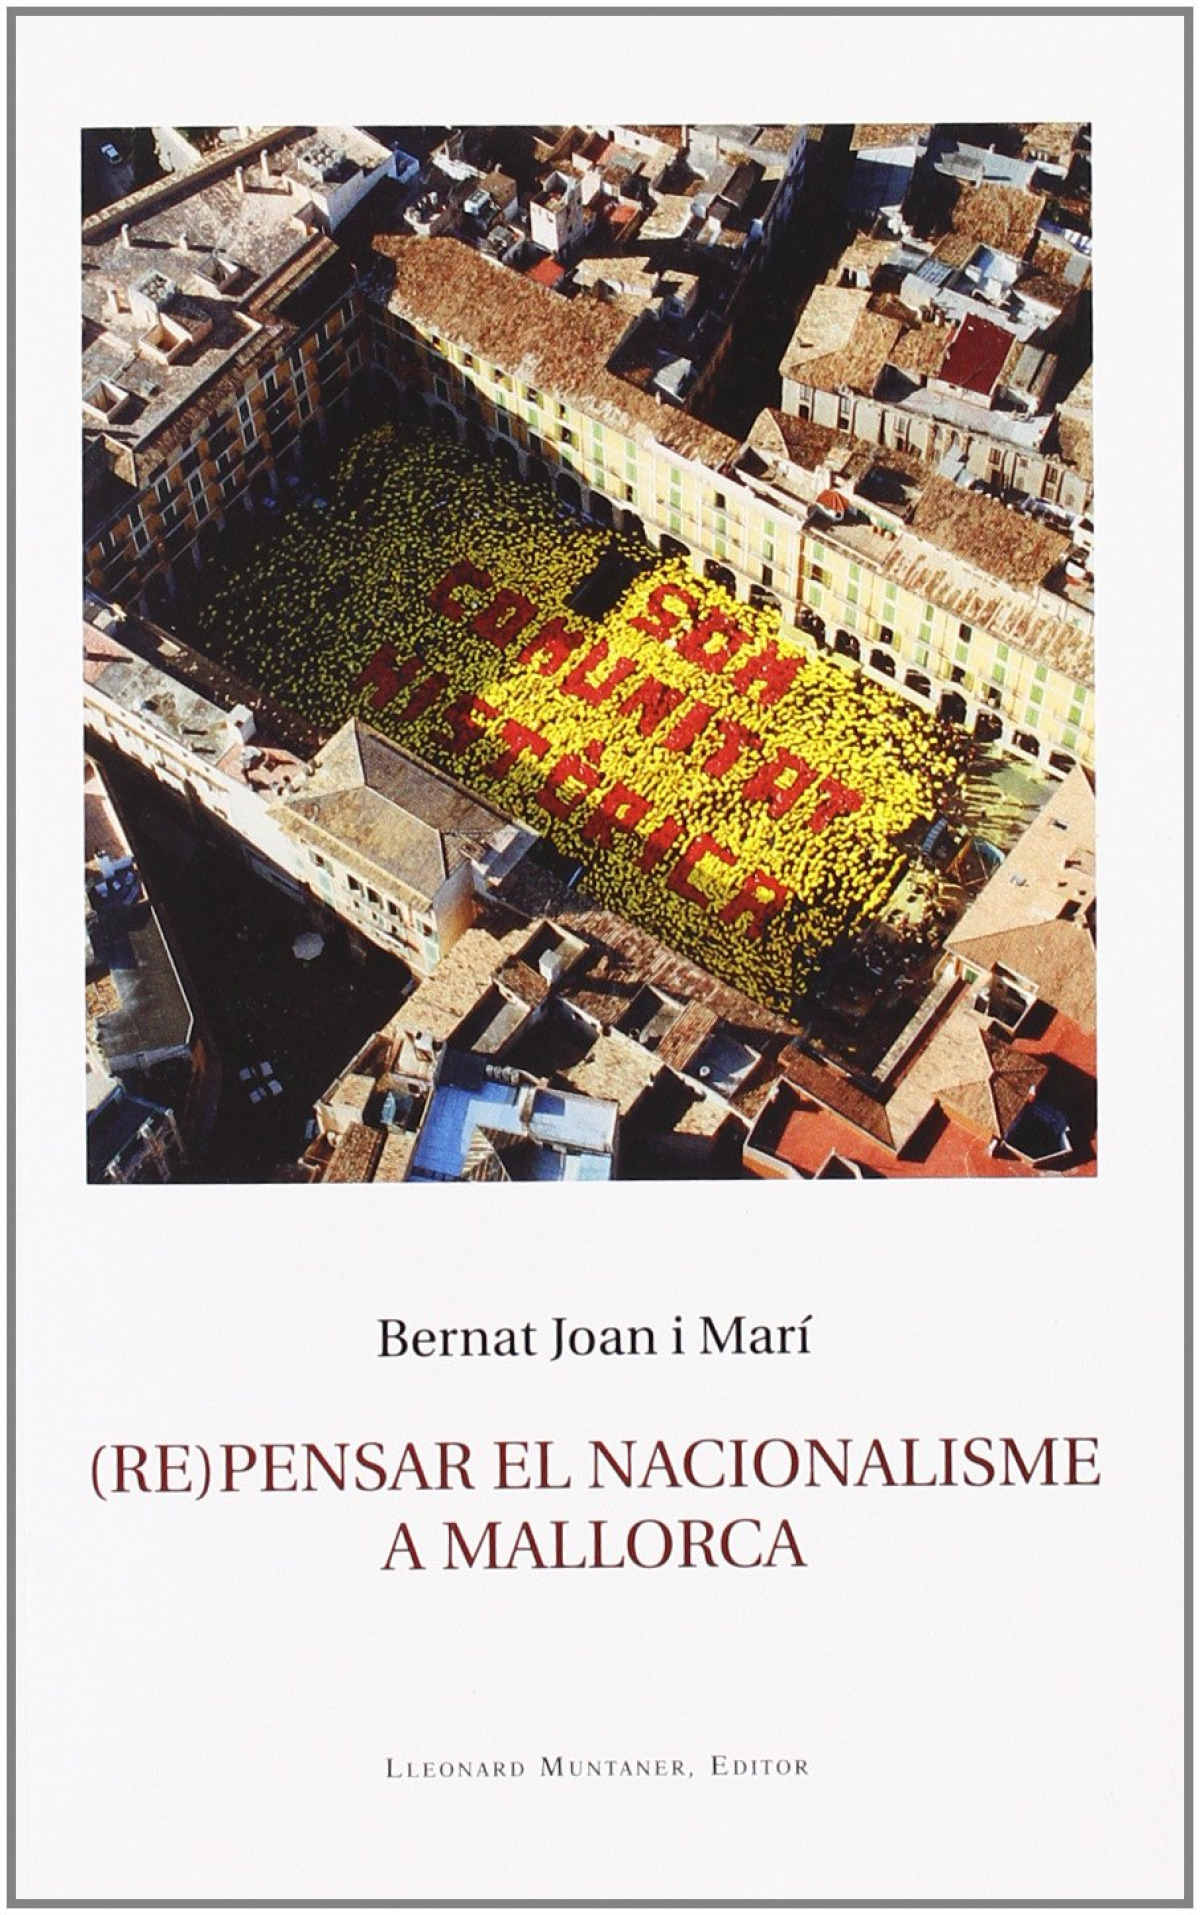 Repensar el nacionalisme a mallorca - Bernat Joan I Mari